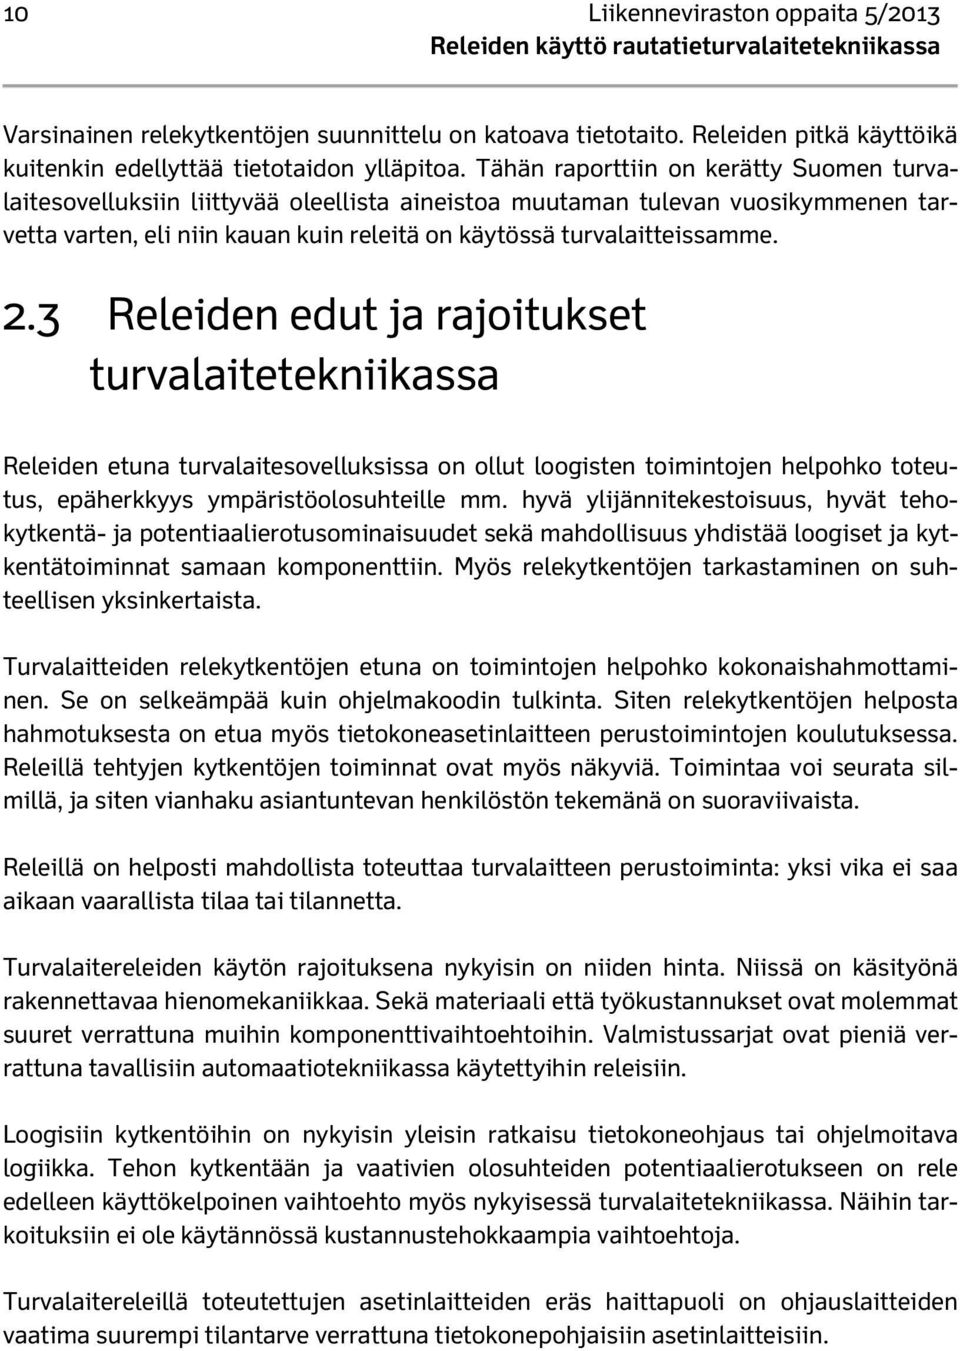 Tähän raporttiin on kerätty Suomen turvalaitesovelluksiin liittyvää oleellista aineistoa muutaman tulevan vuosikymmenen tarvetta varten, eli niin kauan kuin releitä on käytössä turvalaitteissamme. 2.